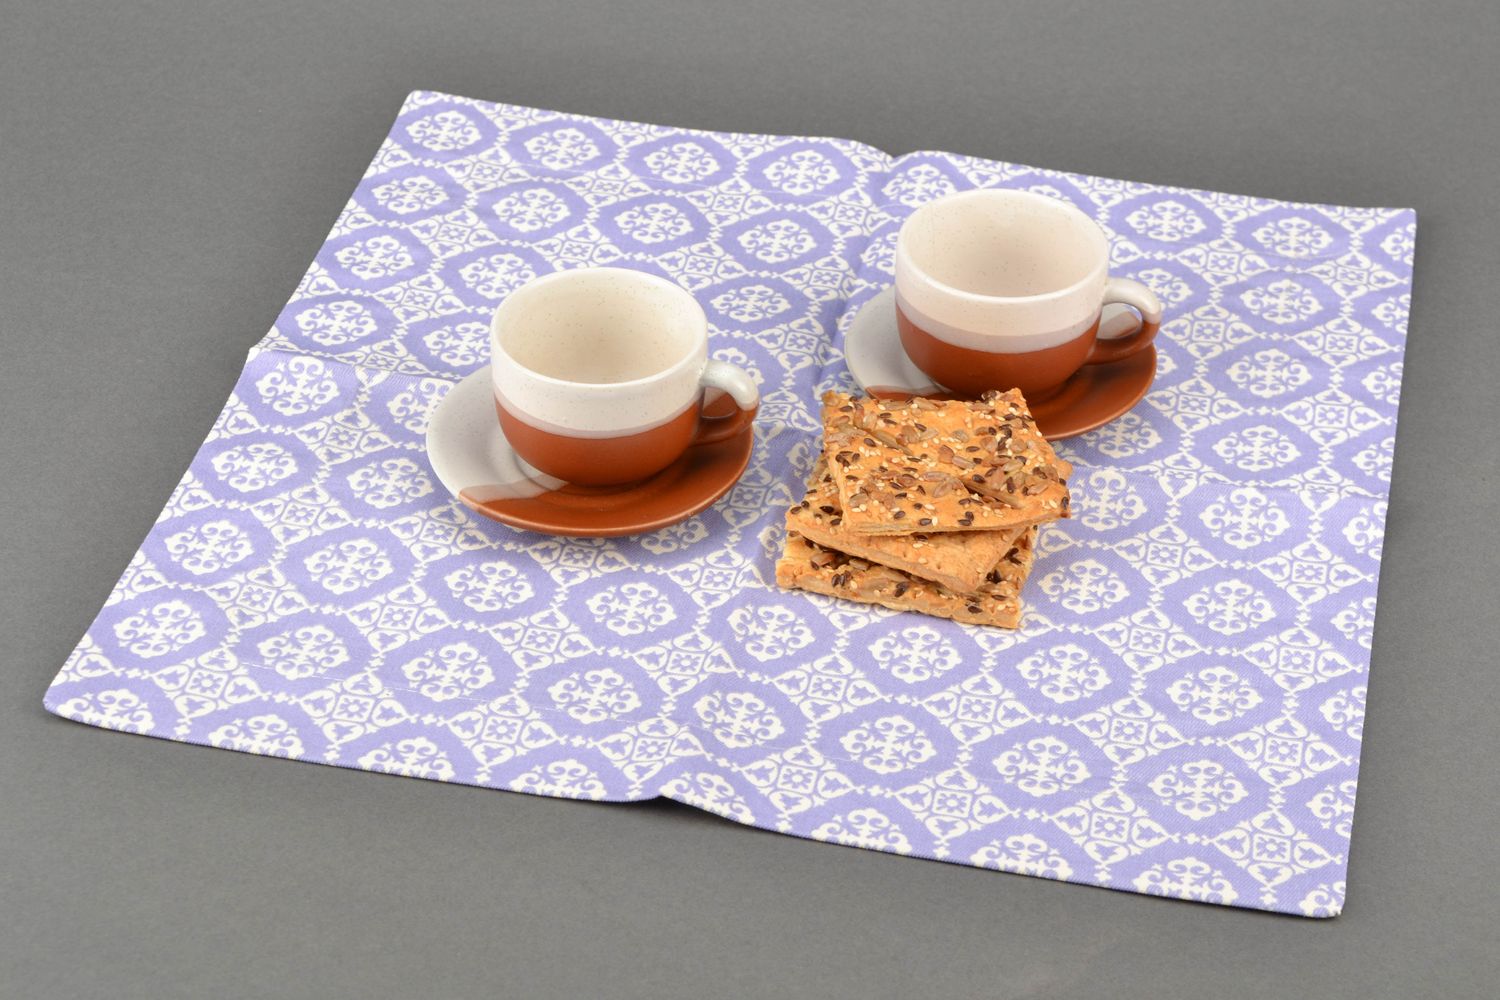 Текстильная салфетка для сервировки стола ручной работы Лаванда-ажур фото 1